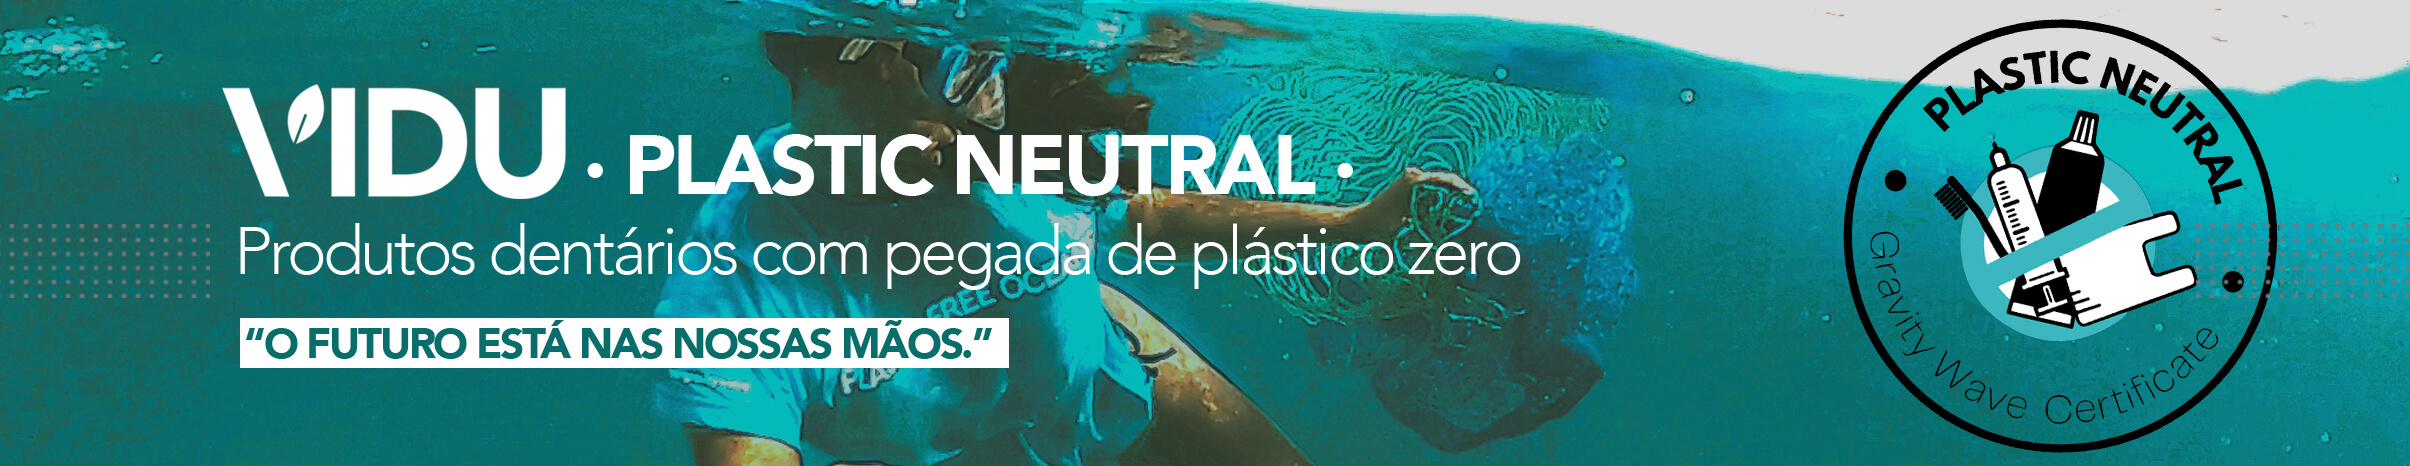 VIDU nova marca plastic neutral de produtos dentários ecológicos